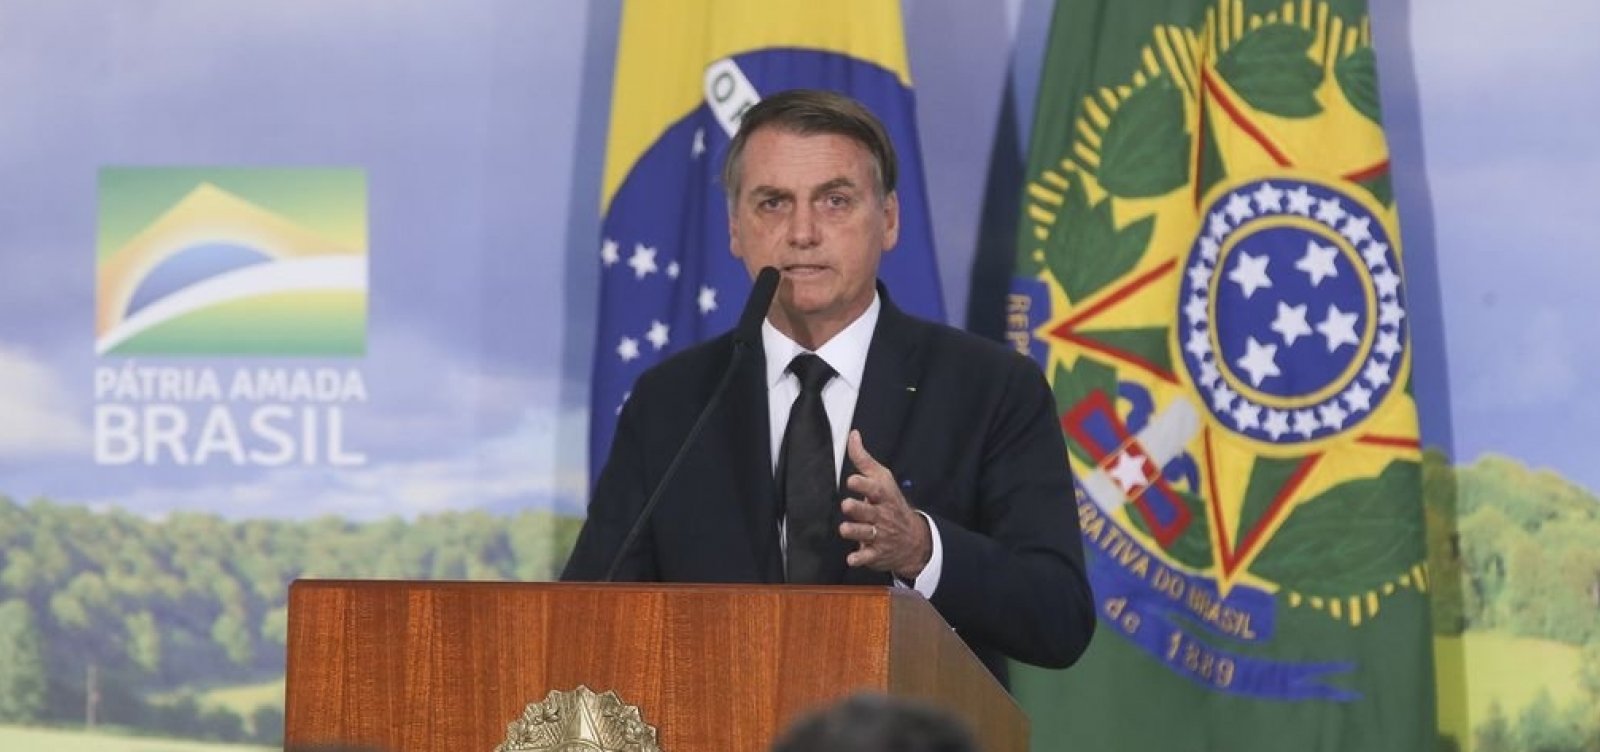 Partidos pedem ministério, mas nenhum quer o da Damares, diz Bolsonaro